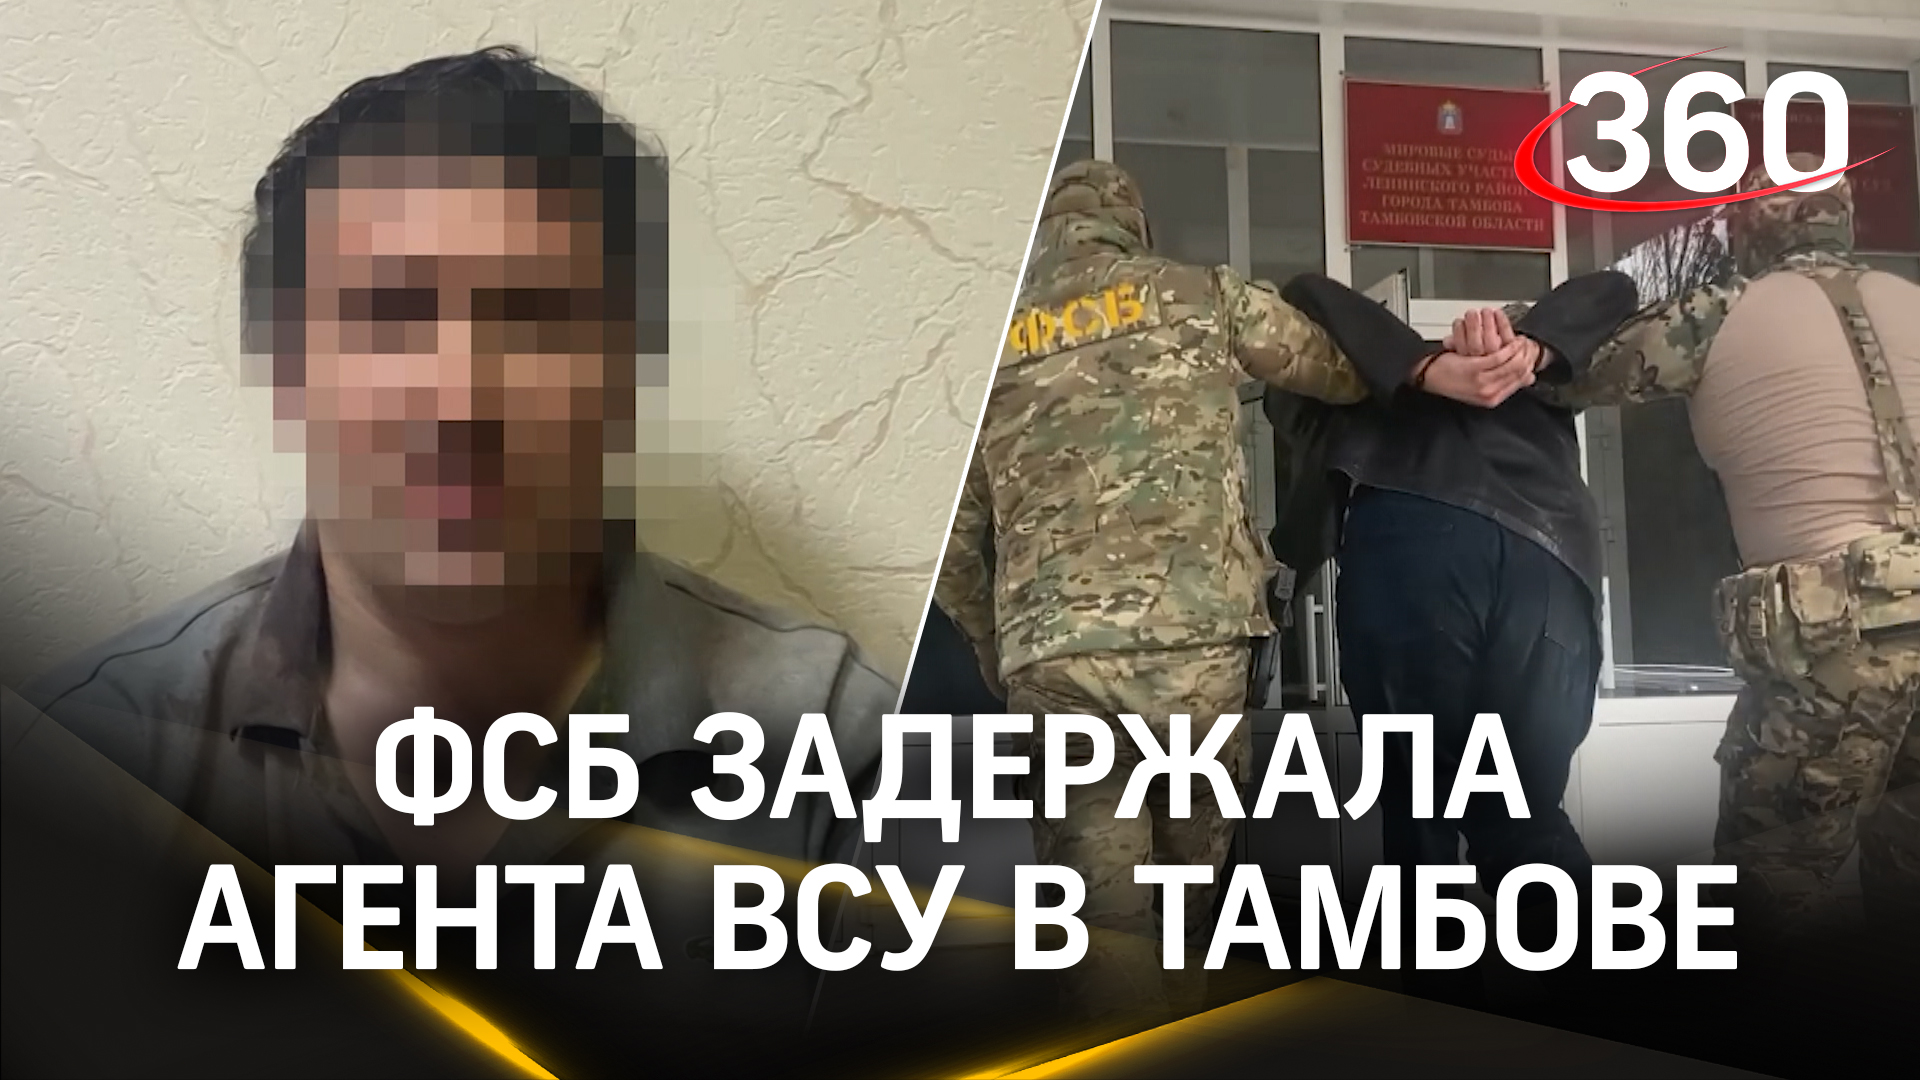 Взорвать суды не удалось: ФСБ задержала украинского агента в Тамбове